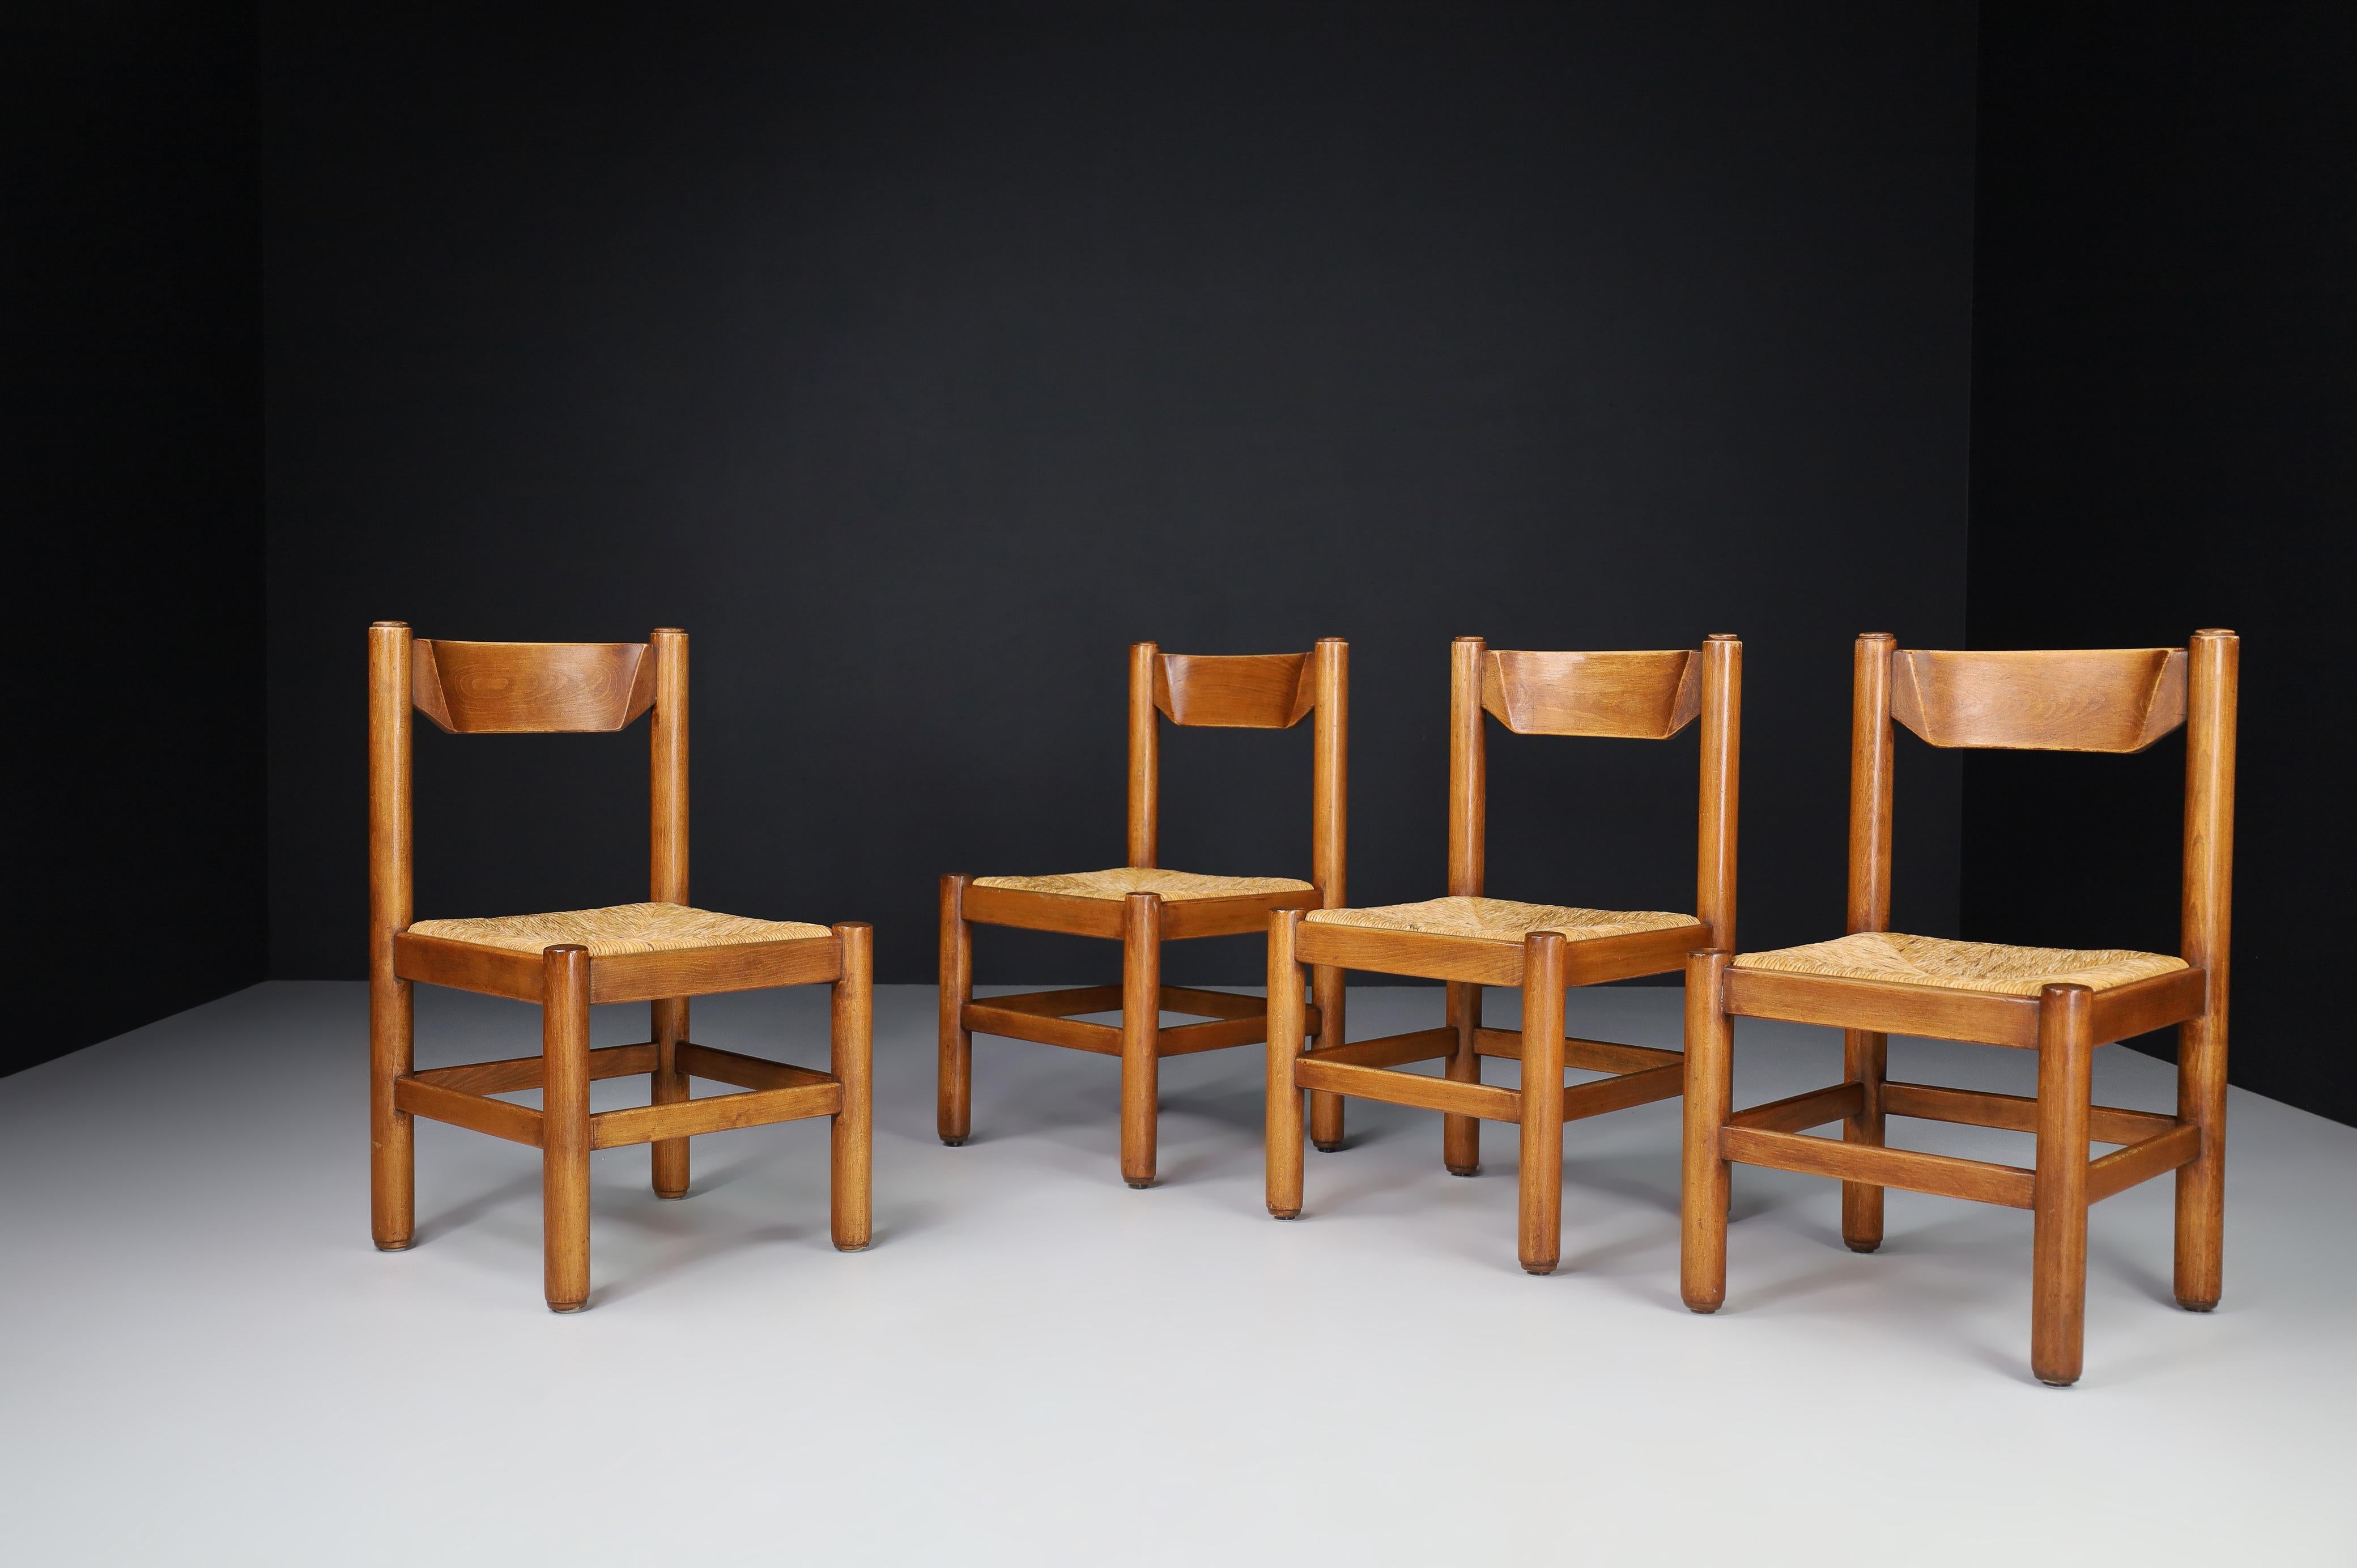 Paire de quatre chaises en chêne et jonc dans le style de Charlotte Perriand, France, années 1960. 

Ces chaises en chêne massif présentent une belle patine naturelle et sont en excellent état d'origine. Ces chaises constituent un ajout attrayant à